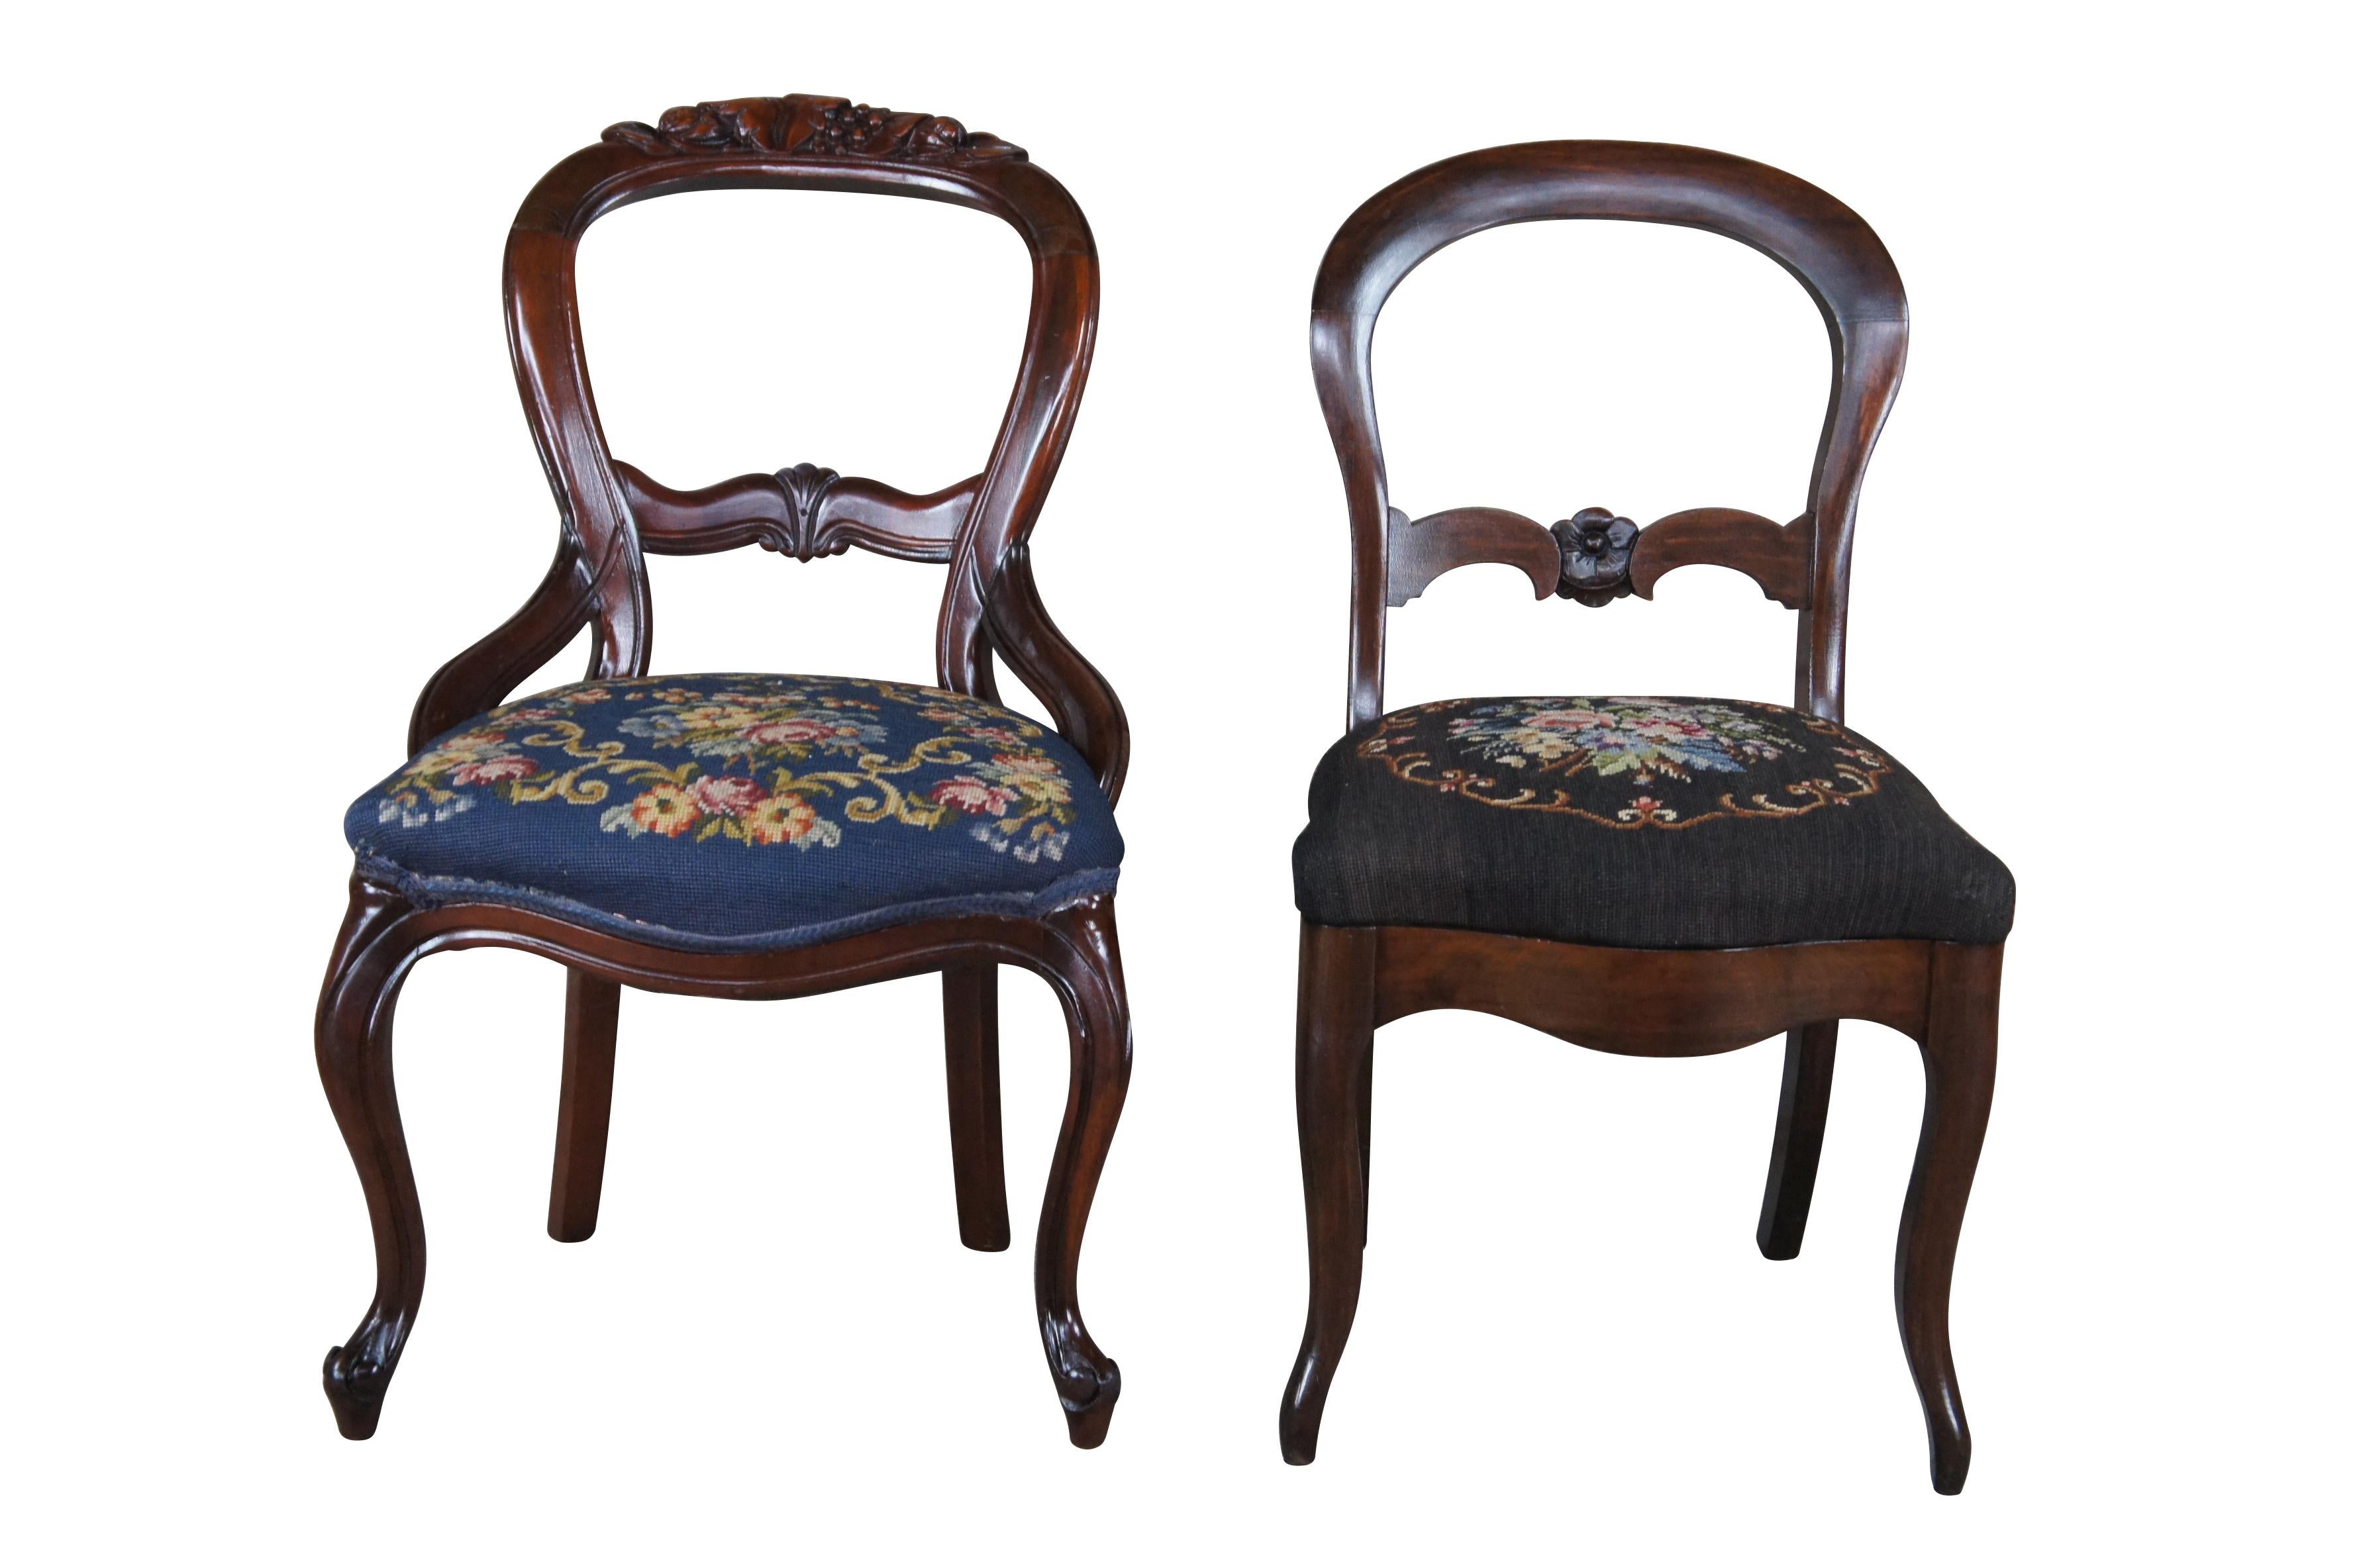 Lot de 4 chaises de salle à manger ou d'appoint victoriennes de la dernière moitié du 19e siècle.  Chacun d'eux est fabriqué en acajou avec un dos ballon sculpté et une pointe d'aiguille florale.  Chacune des chaises est dotée d'un tablier avant en